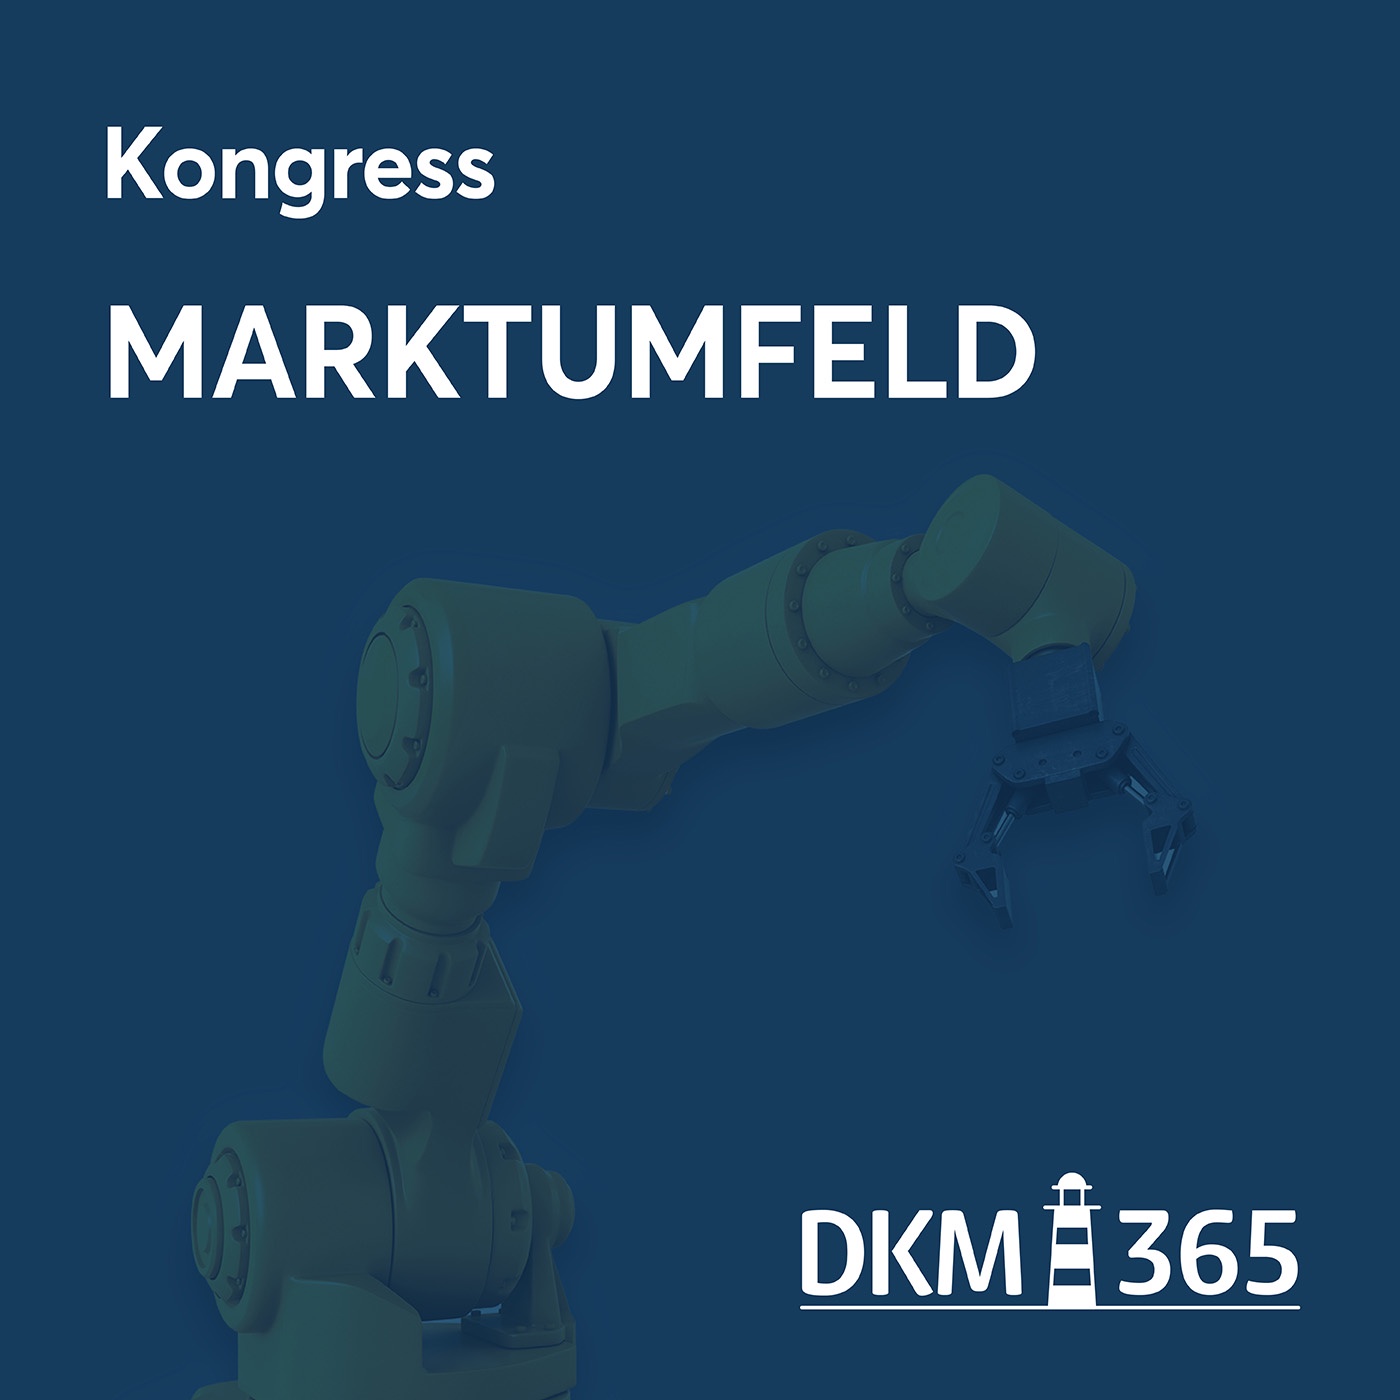 DKM OnStage - Kongress Marktumfeld Gewerbe/Industrie/Leben mit Dr. Hans-Georg Jenssen, Moritz Rutt und Hartmut Stützer